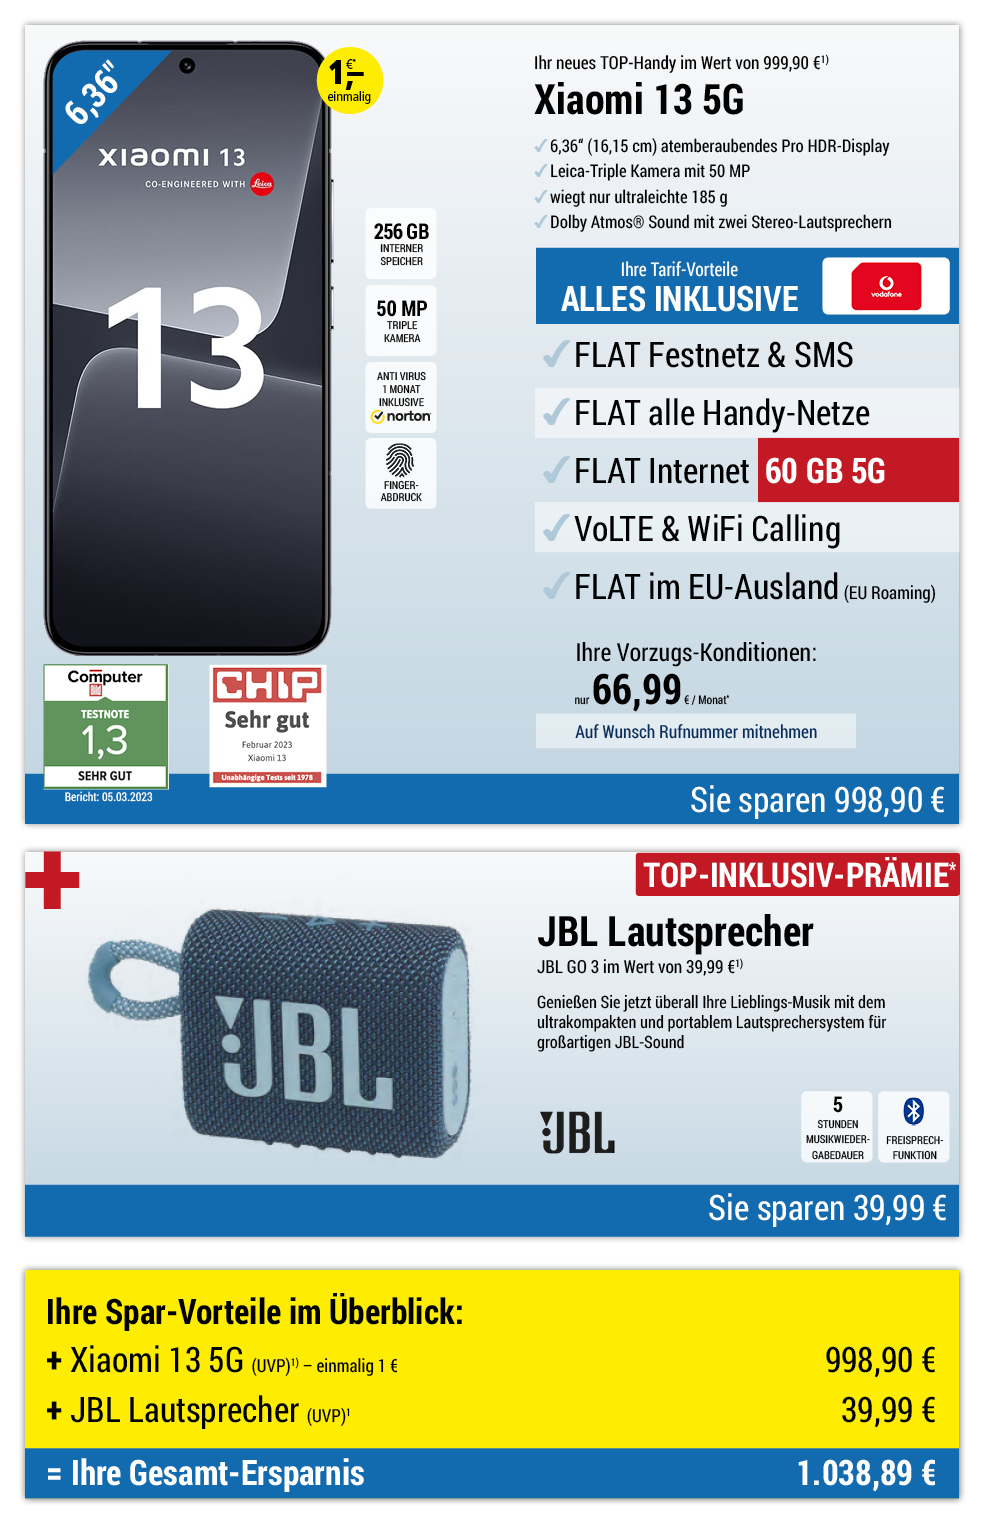 Für einmalig 1 €*: Xiaomi 13 + JBL Lautsprecher mit ALL NET FLAT für 66,99 €/Monat